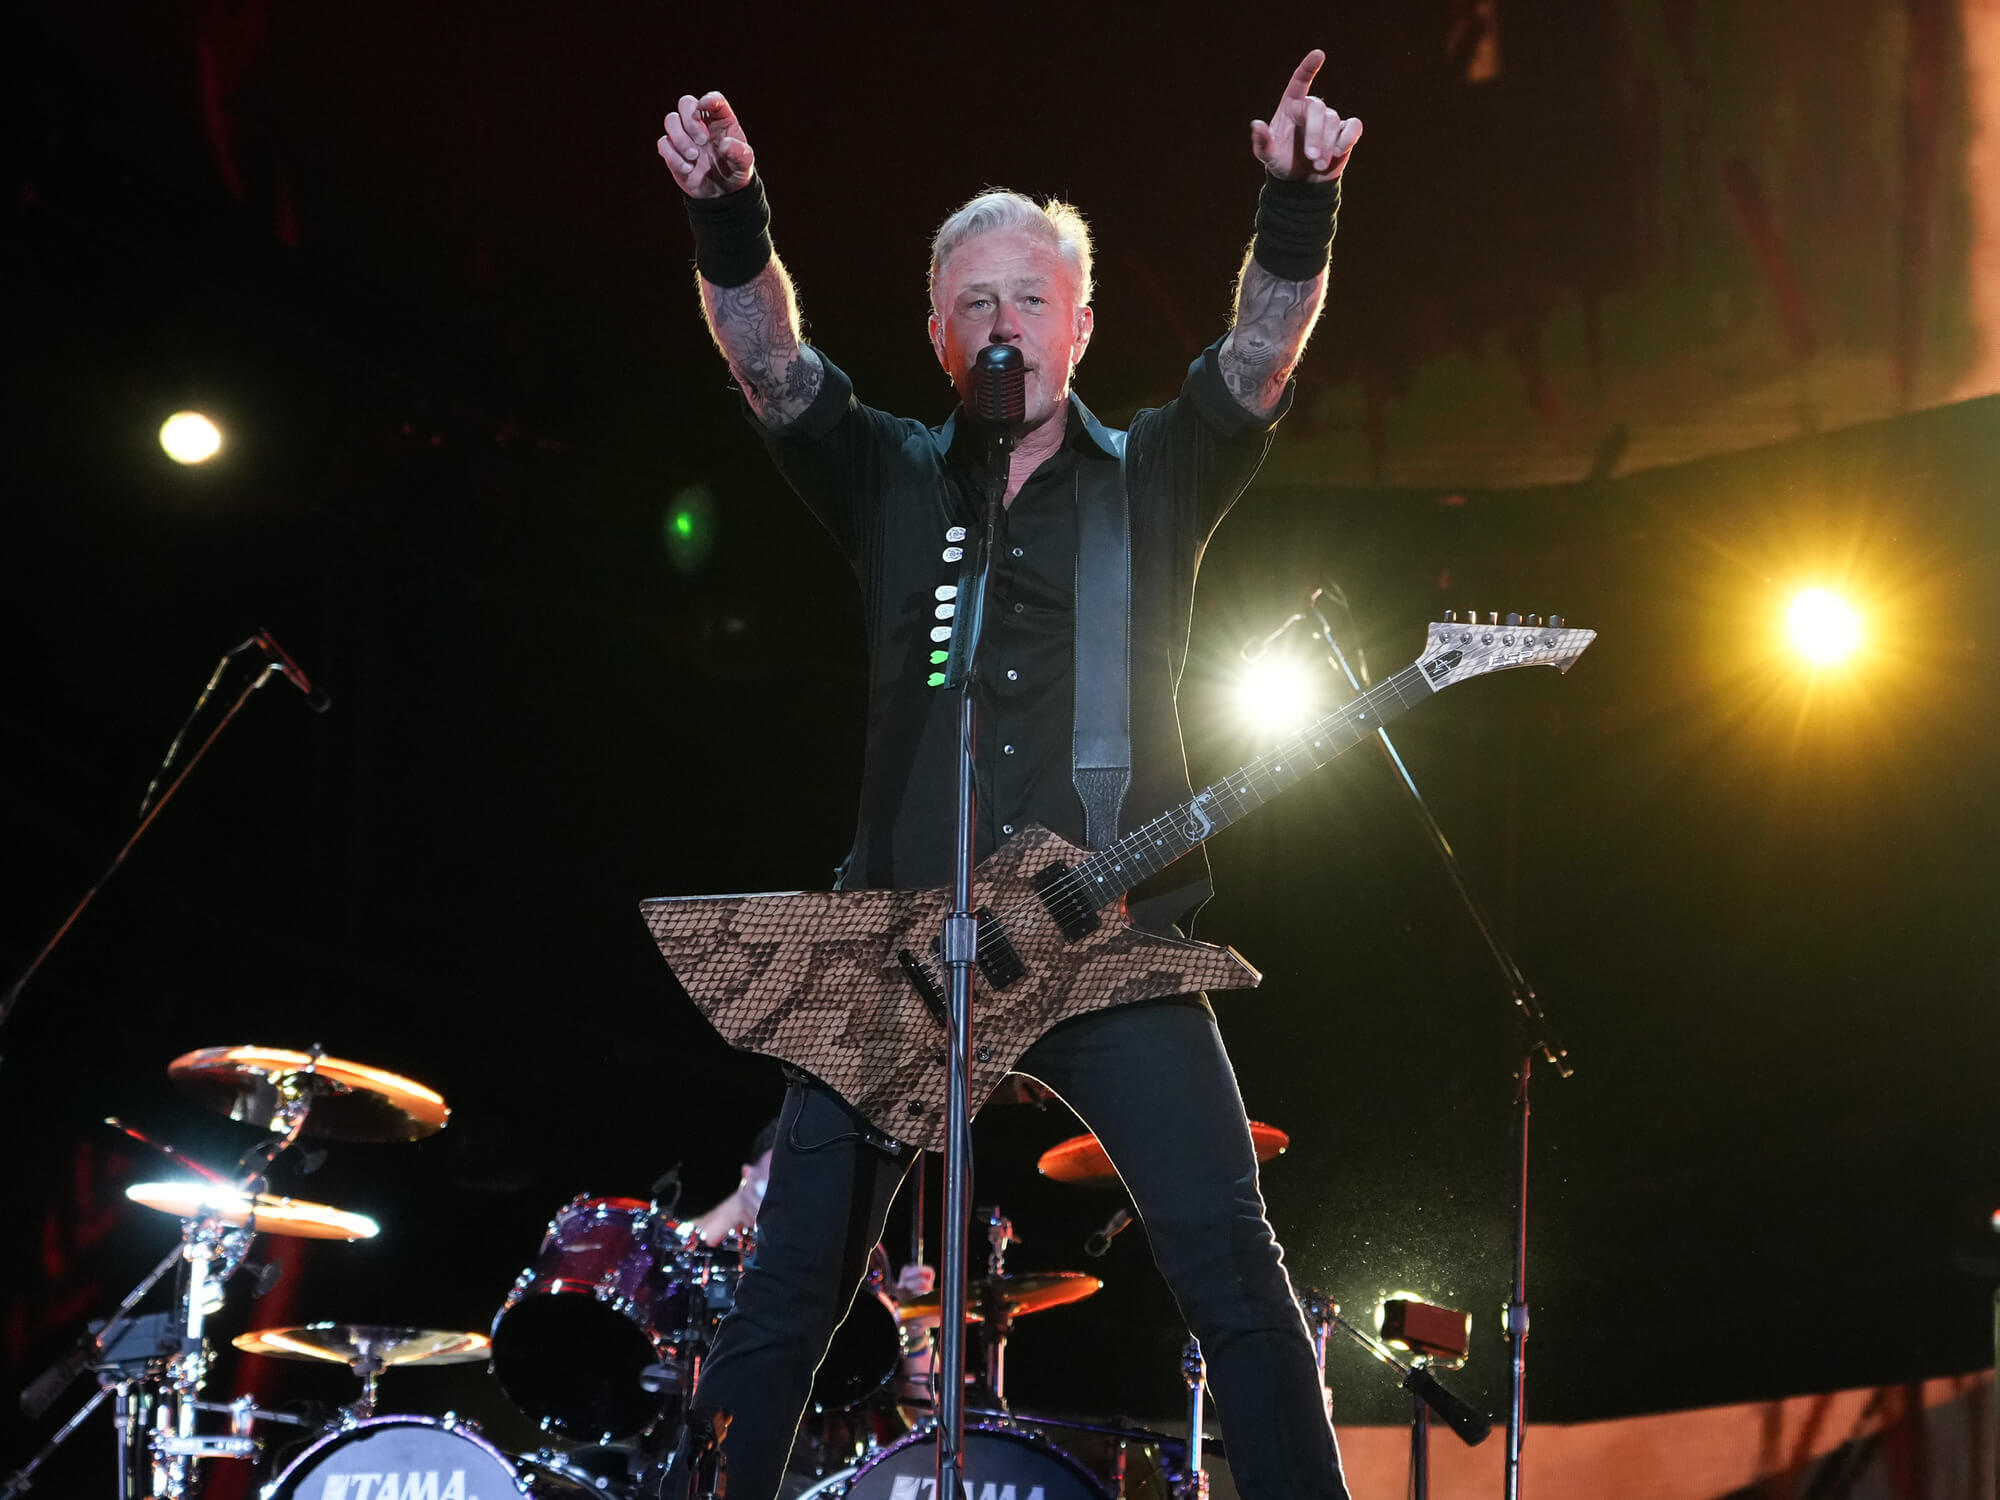 James Hetfield of Metallica